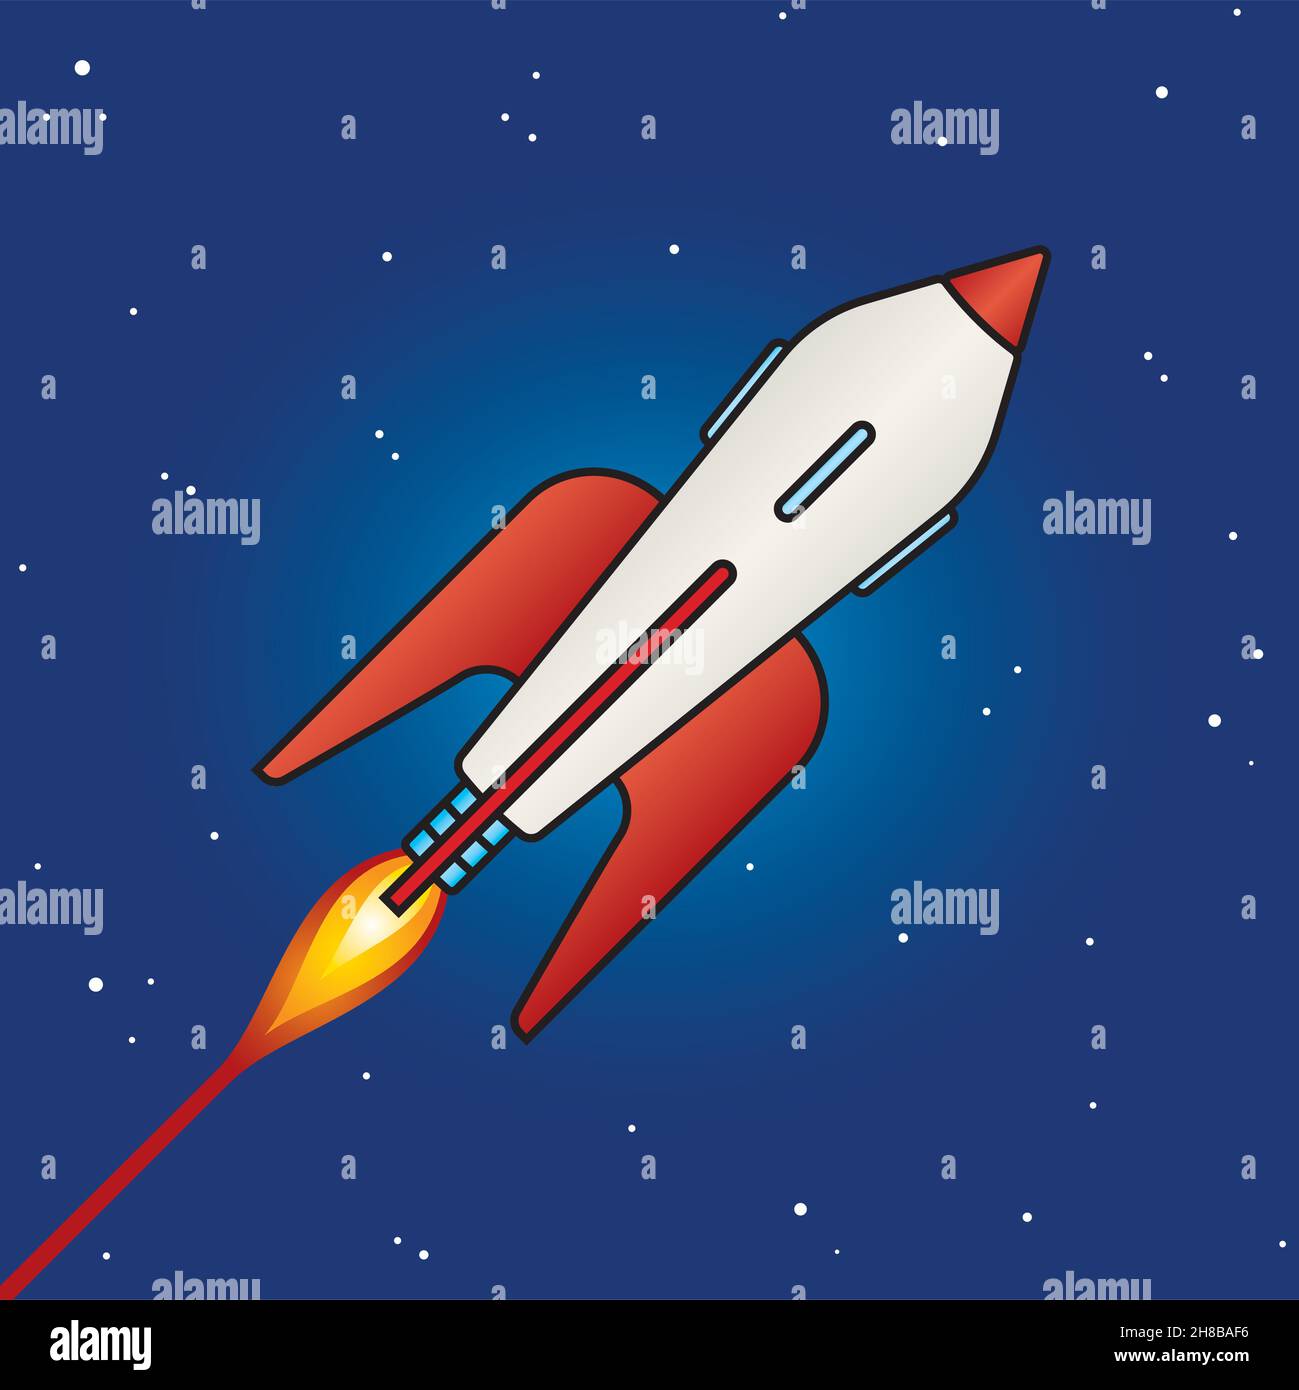 Retro-Science-Fiction-Raketendesign im Weltraum. Coole Vektor-Illustrationen im Vintage-Stil des klassischen Weltraumraketenschiffs aus der Mitte des Jahrhunderts. Abschalten, Baby! Stock Vektor